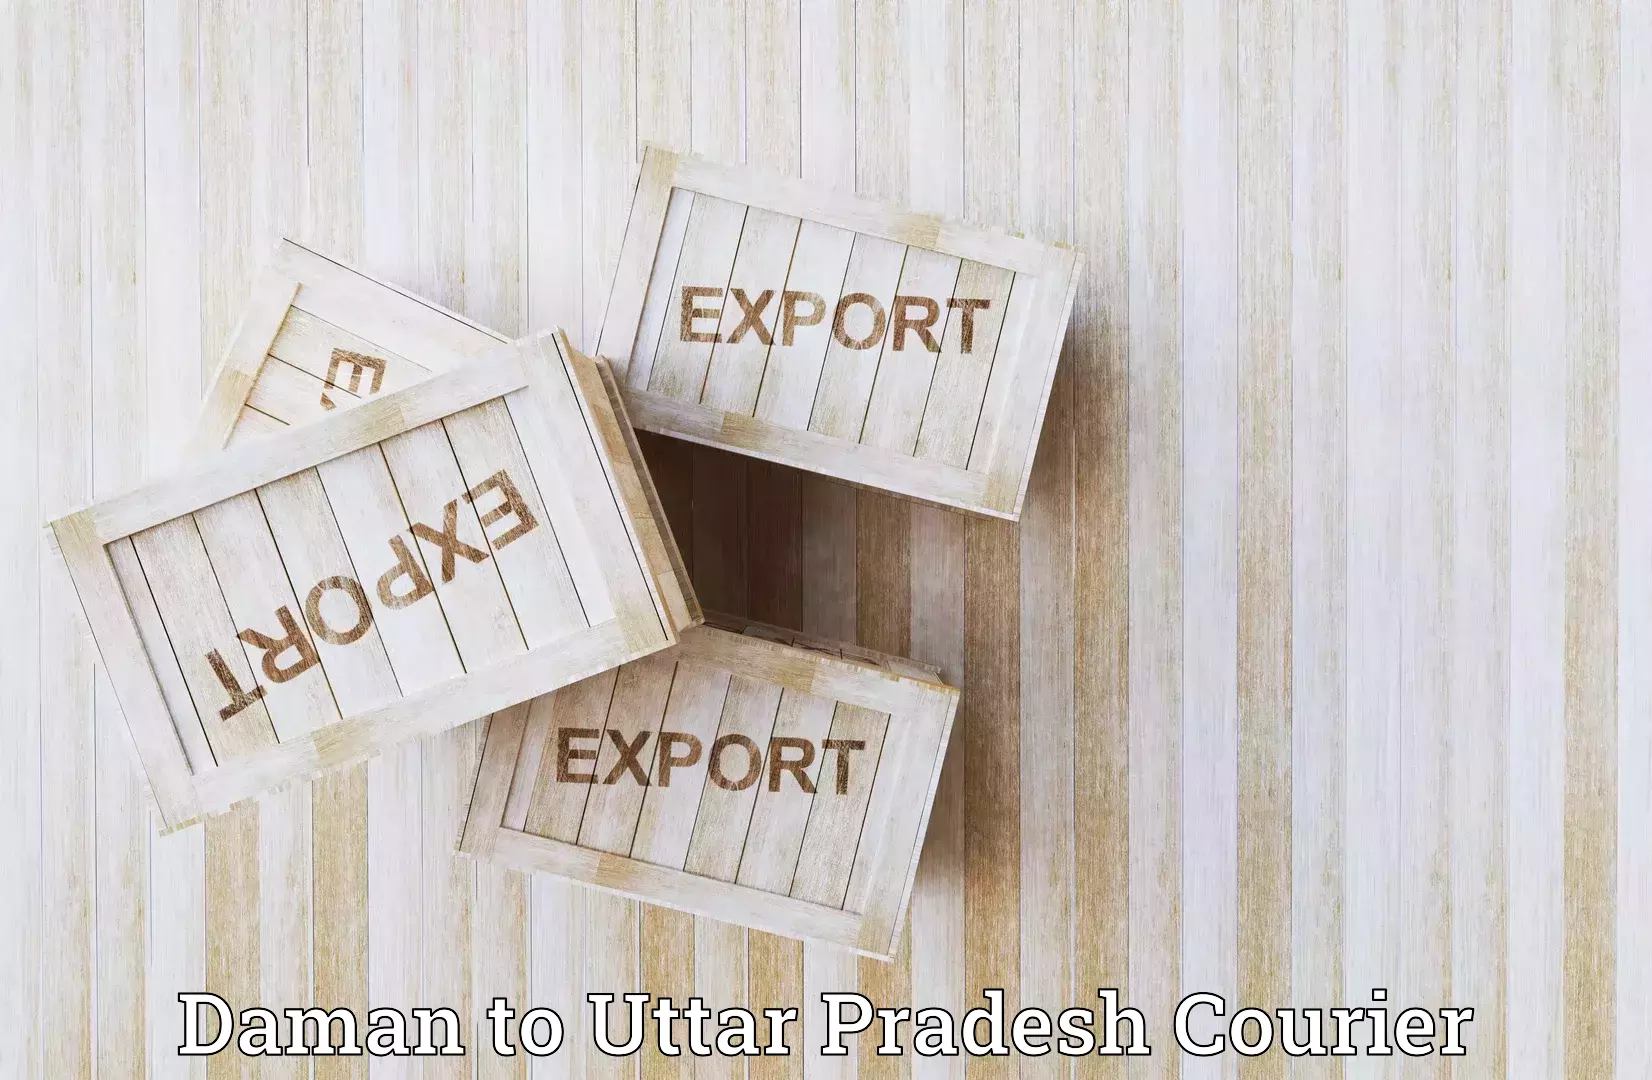 Regular parcel service Daman to Uttar Pradesh